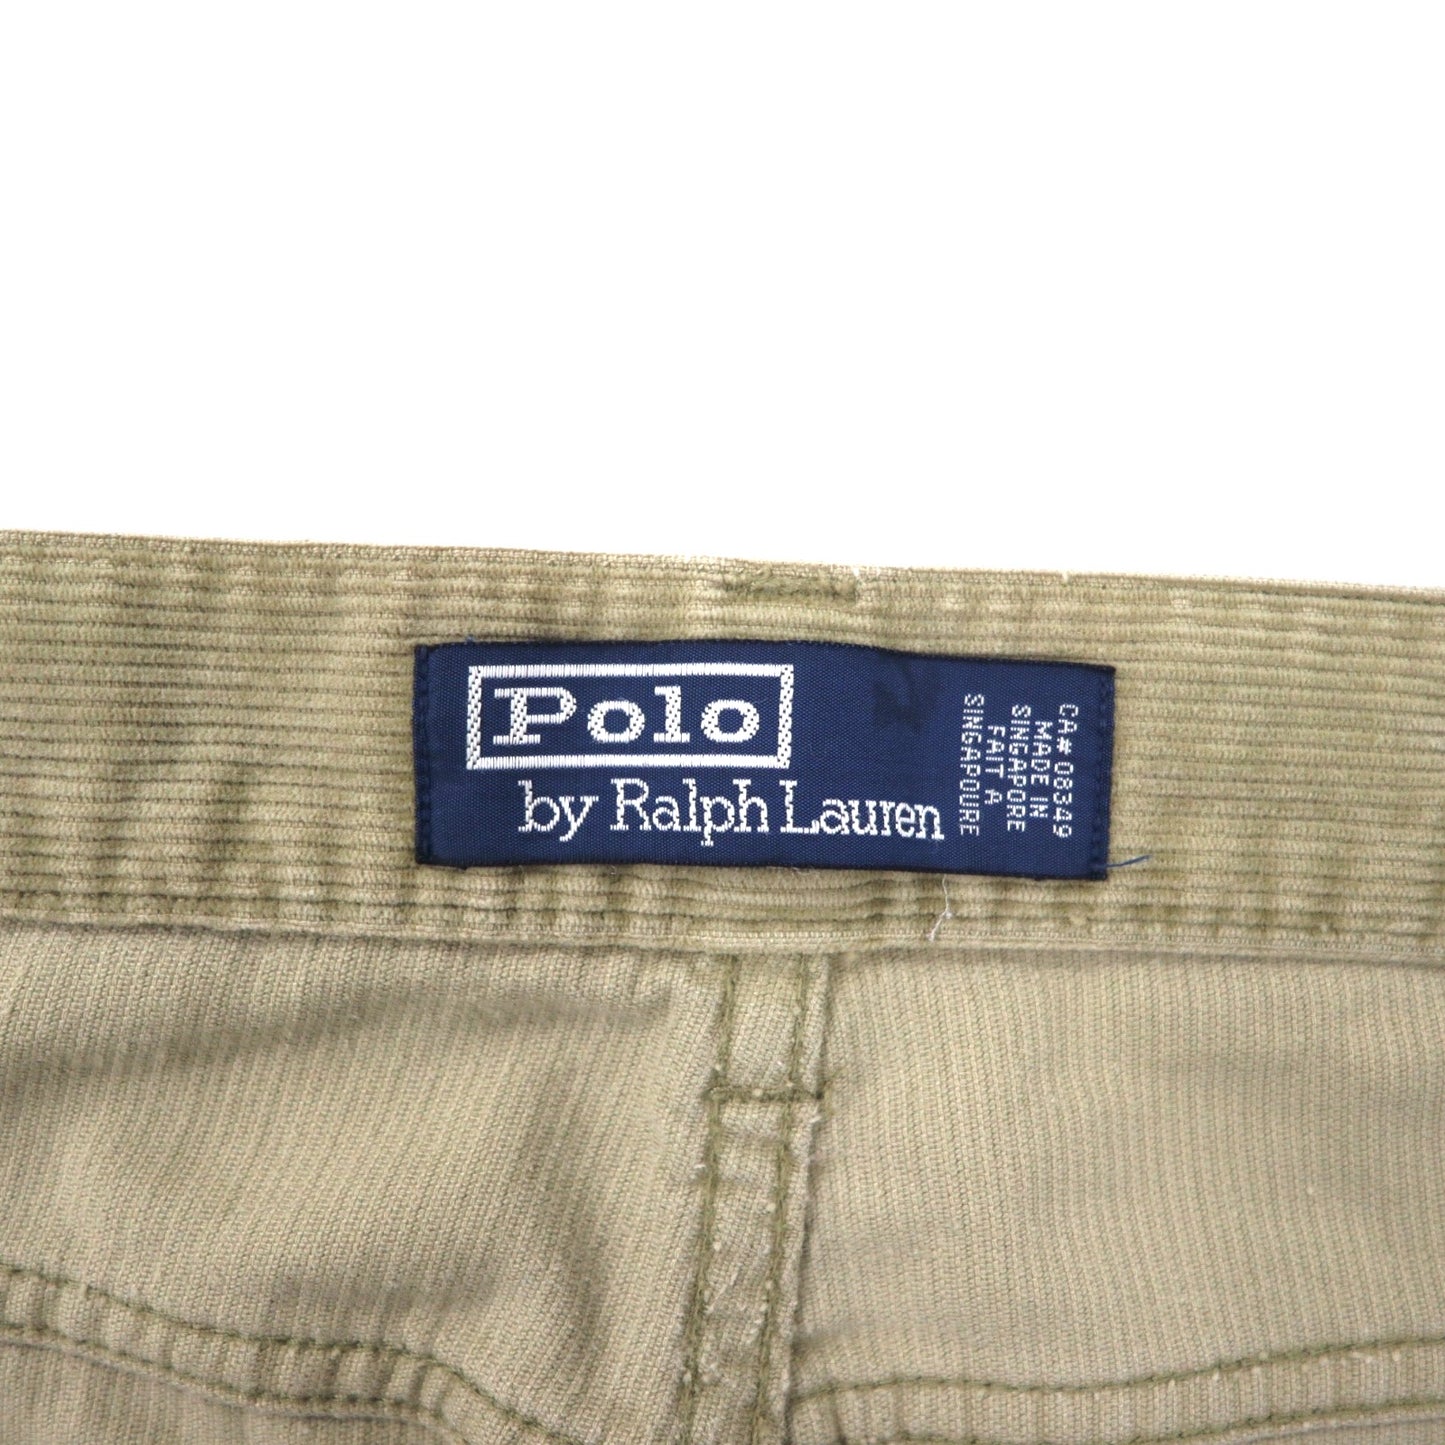 Polo by Ralph Lauren コーデュロイ ストレートパンツ 34 ベージュ コットン